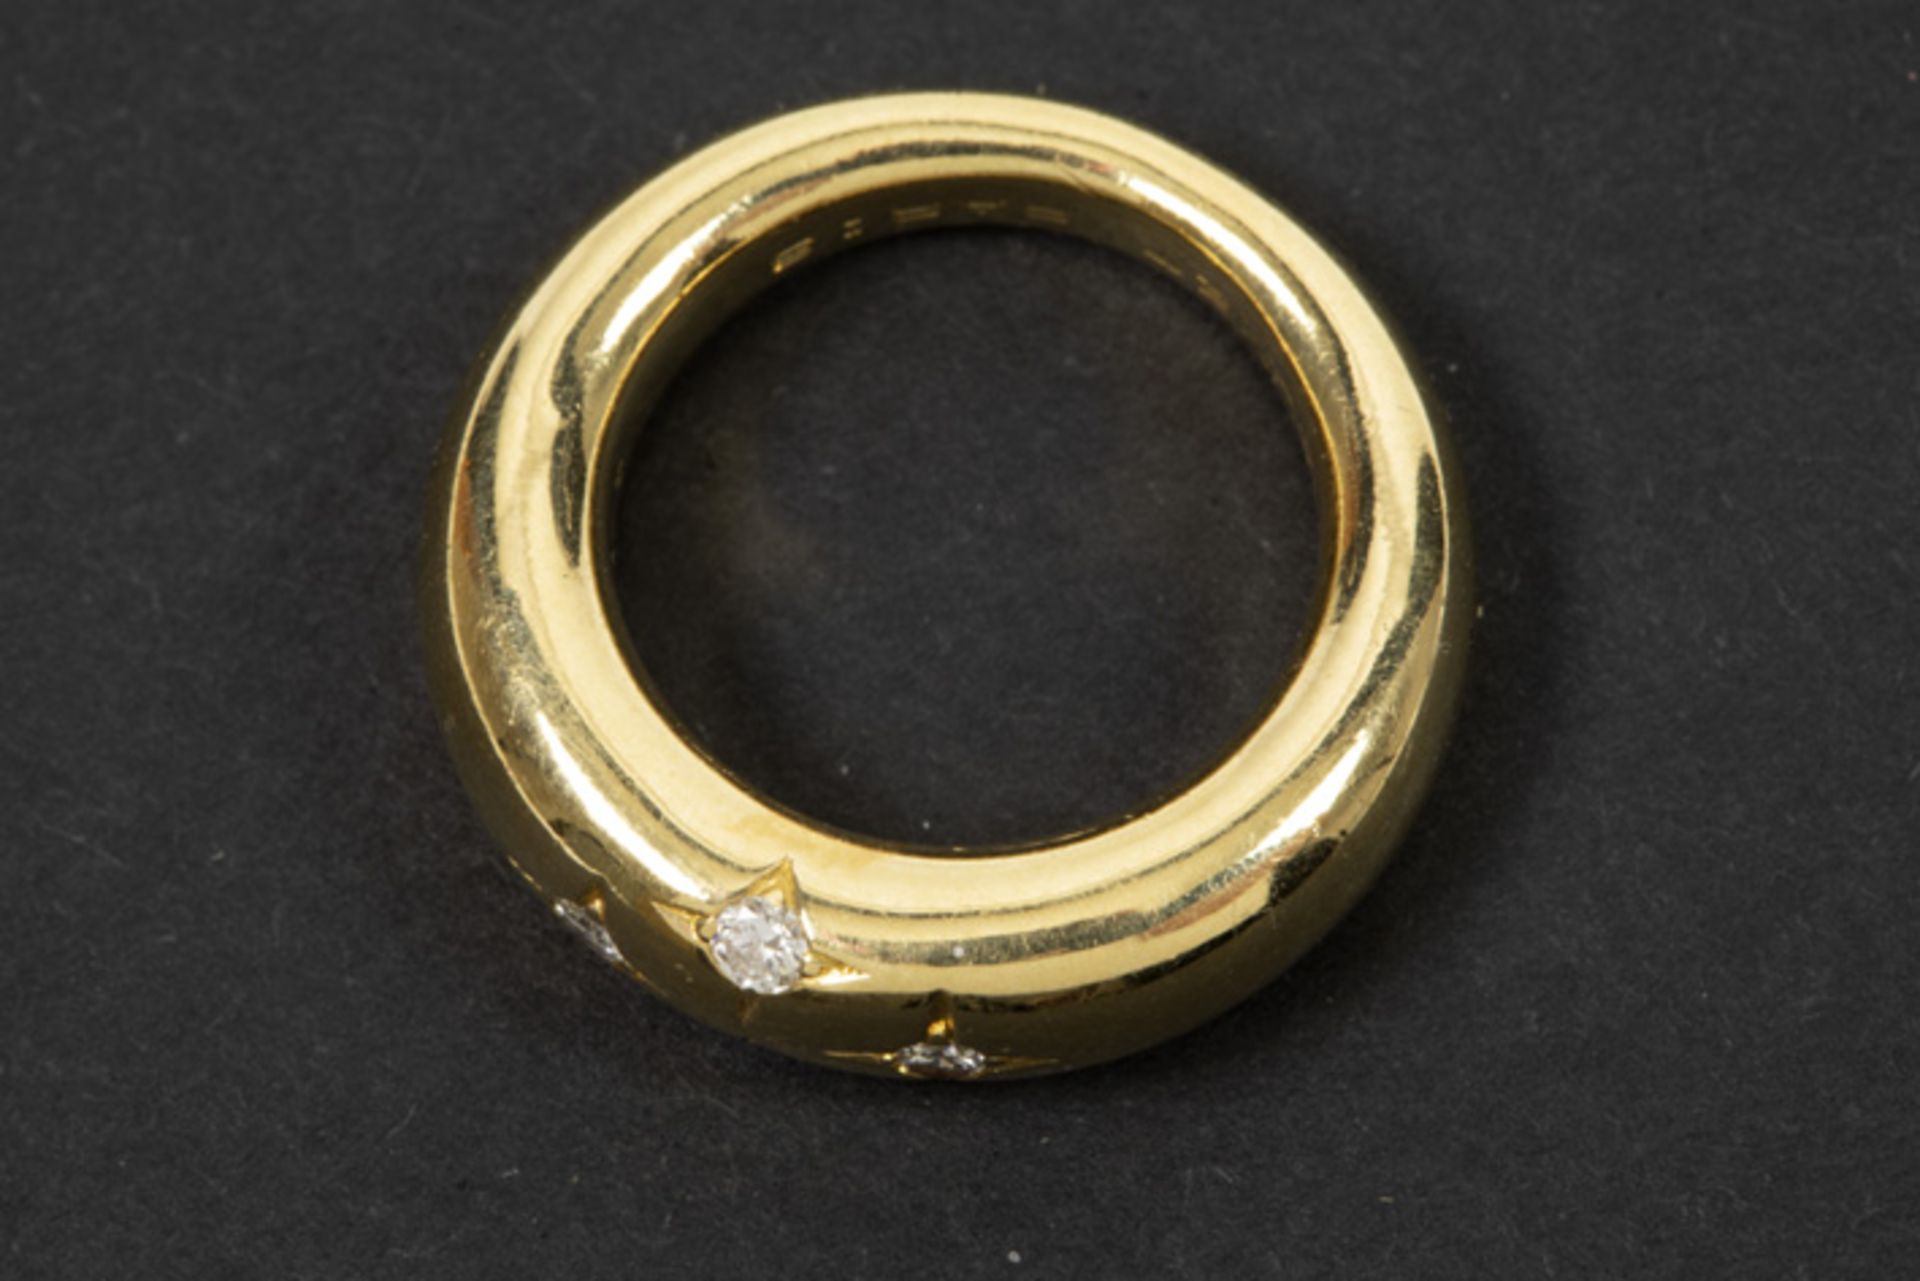 CHAUMET ring in geelgoud (18 karaat) met vier in de corpus gezette briljanten - in [...] - Bild 2 aus 2